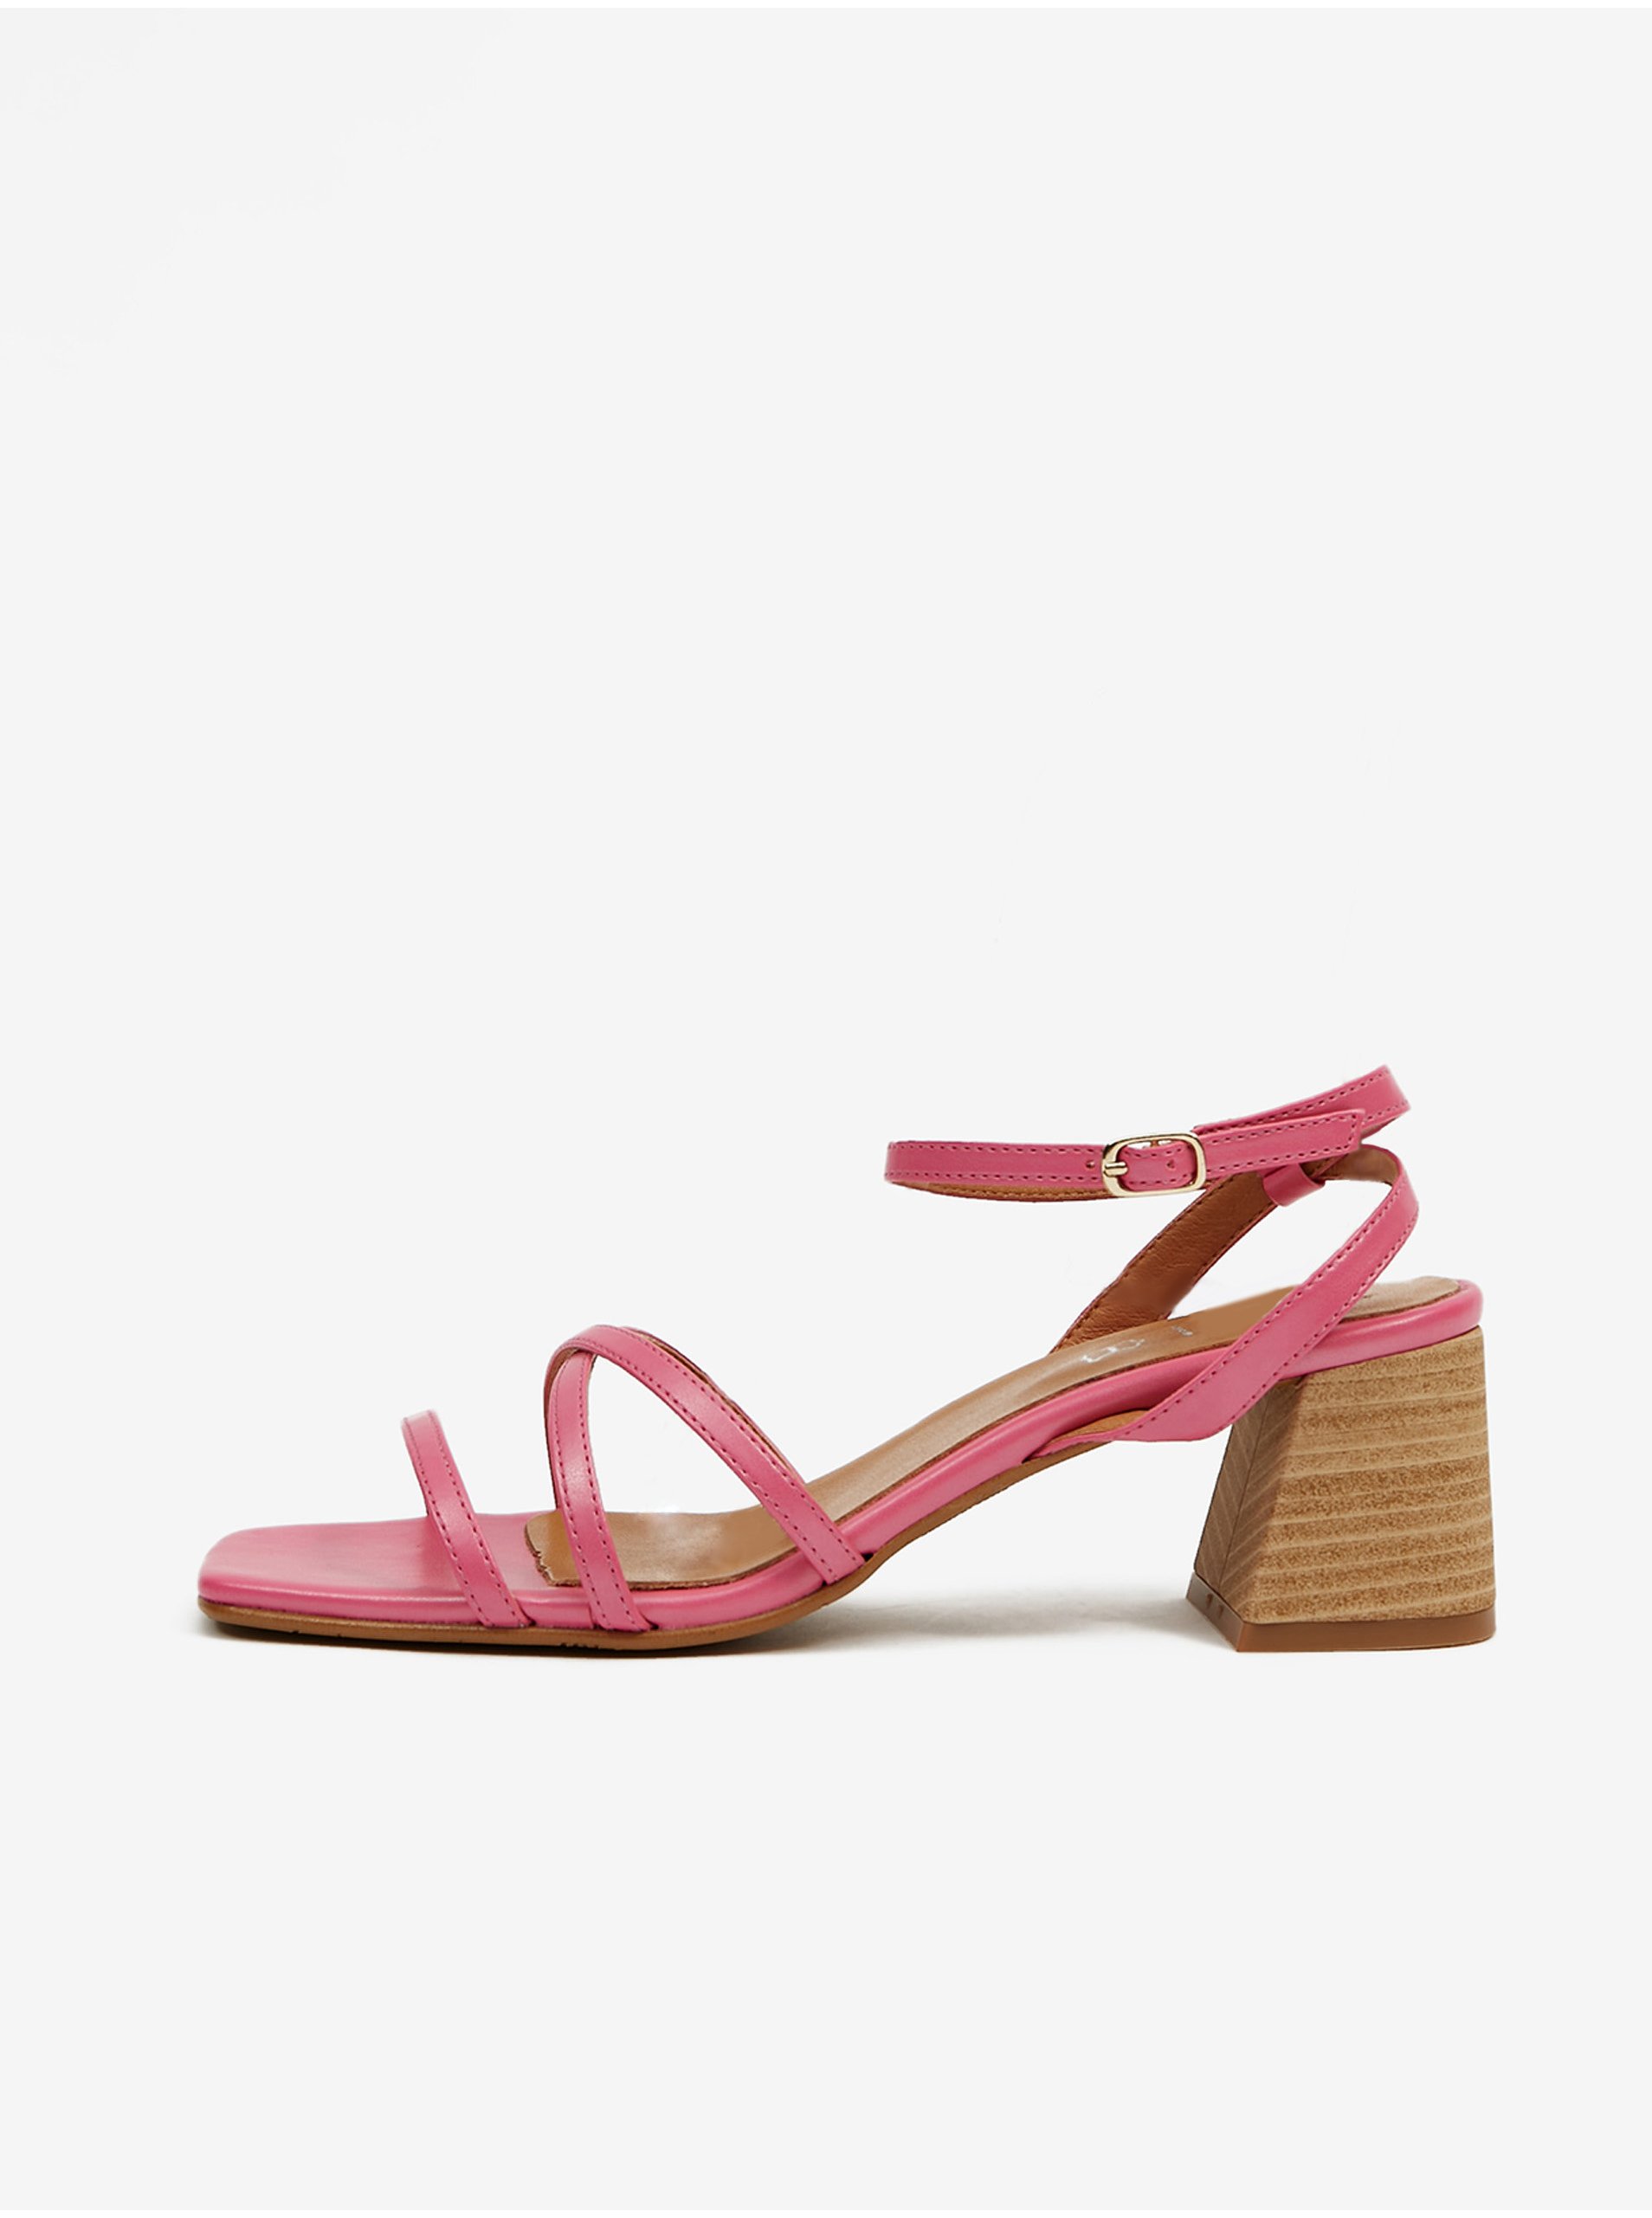 E-shop Ružové dámske sandále na podpätku OJJU